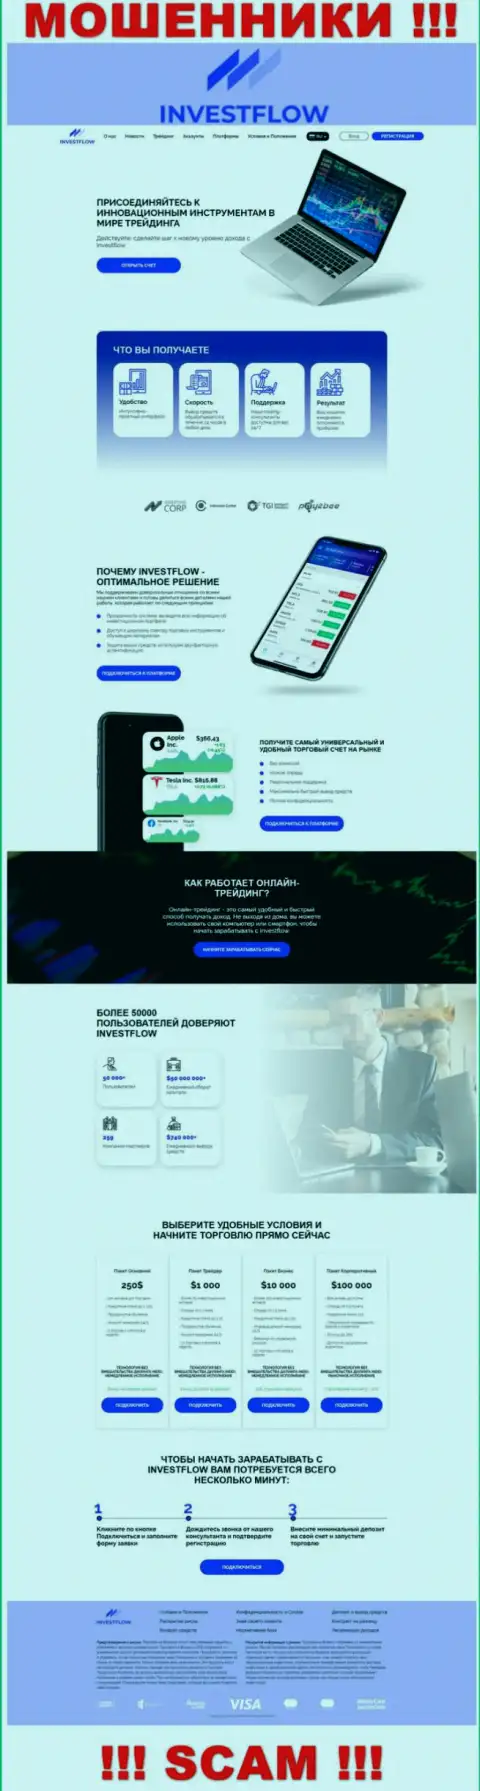 Скрин официального сайта ИнвестФлоу - Invest-Flow Io